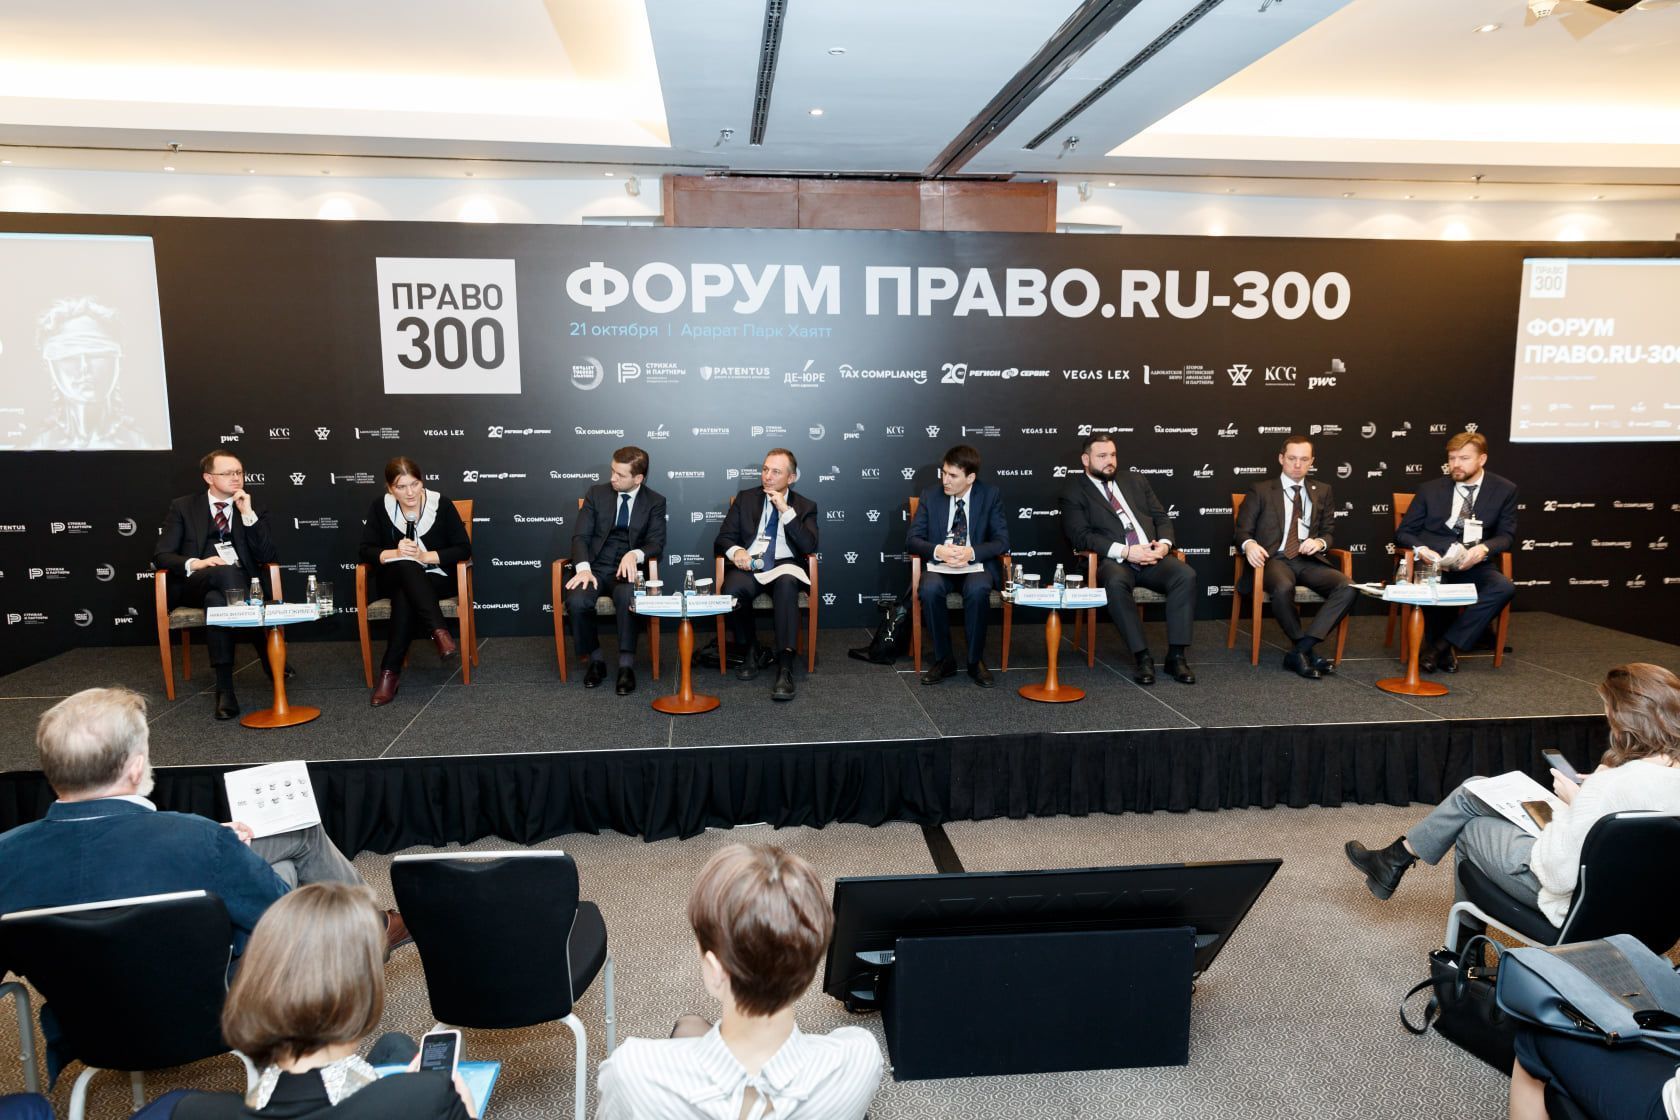 Дарья Гжимек рассказала о специфике работы Роспатента на форуме Право.ru-300